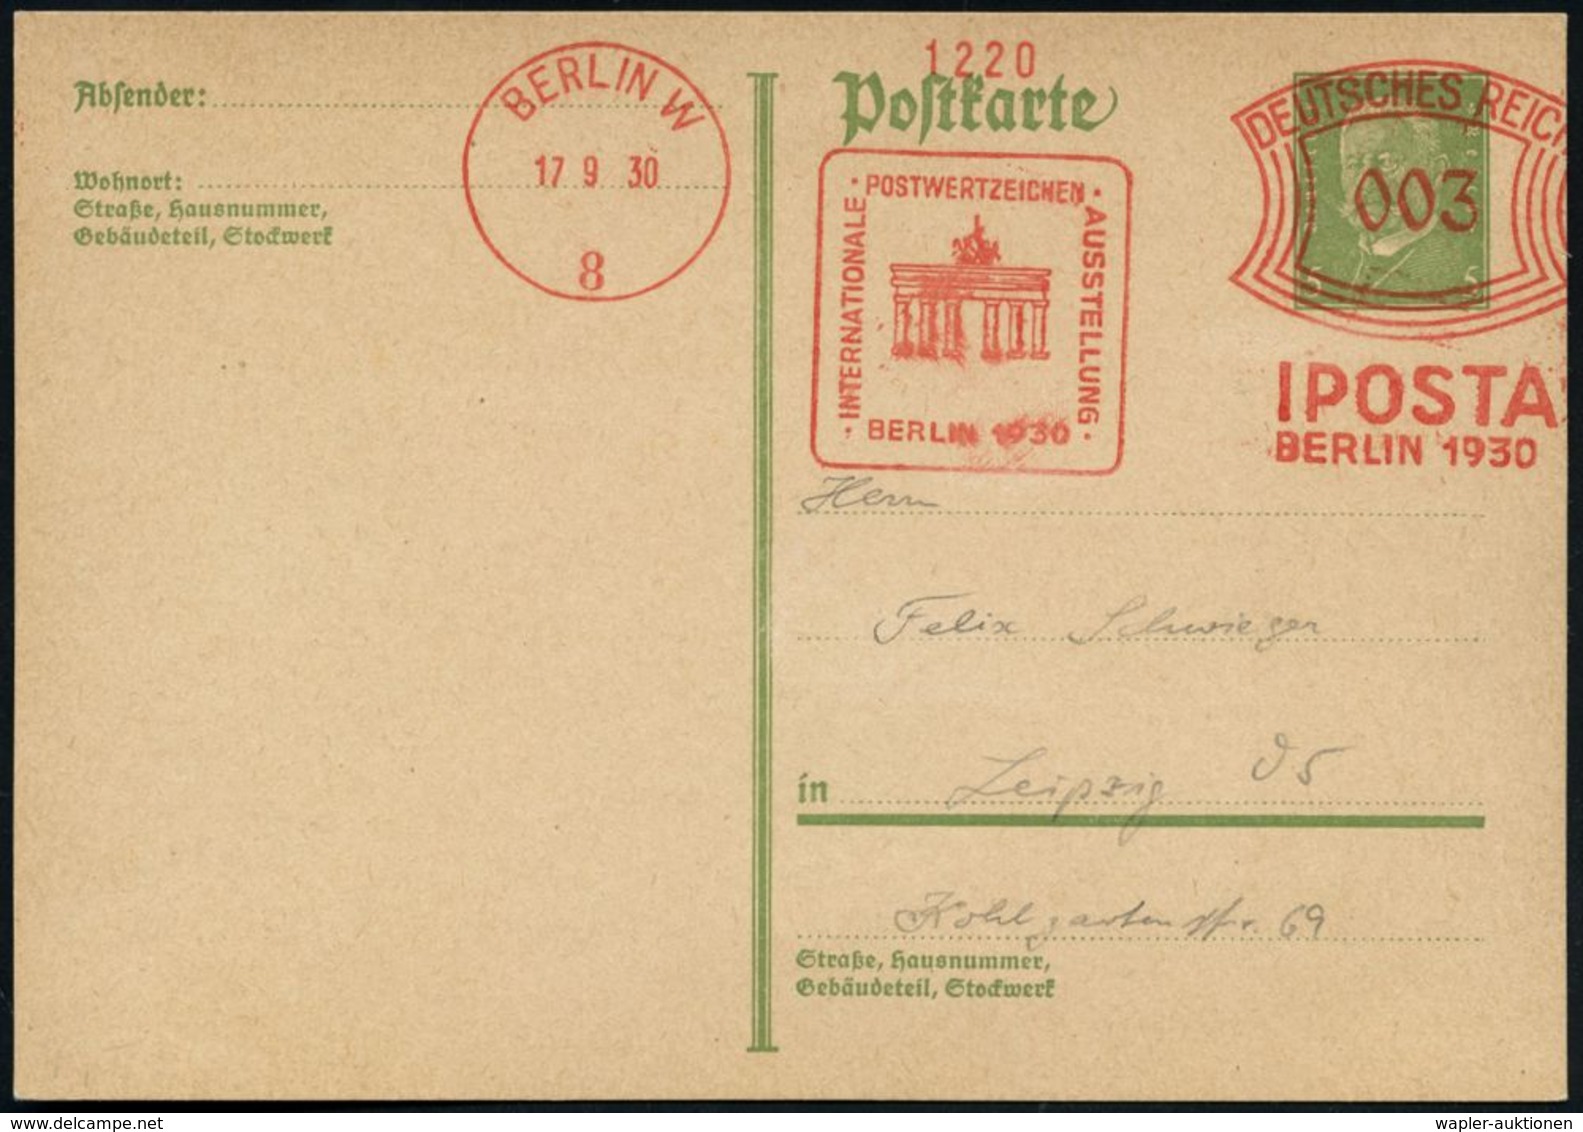 BRANDENBURGER TOR - EIN DEUTSCHES SYMBOL : BERLIN W/ 8/ IPOSTA/ BERLIN.. 1930 (17.9.) AFS 003 Pf. = Brandenbg.Tor Auf In - Monumenti